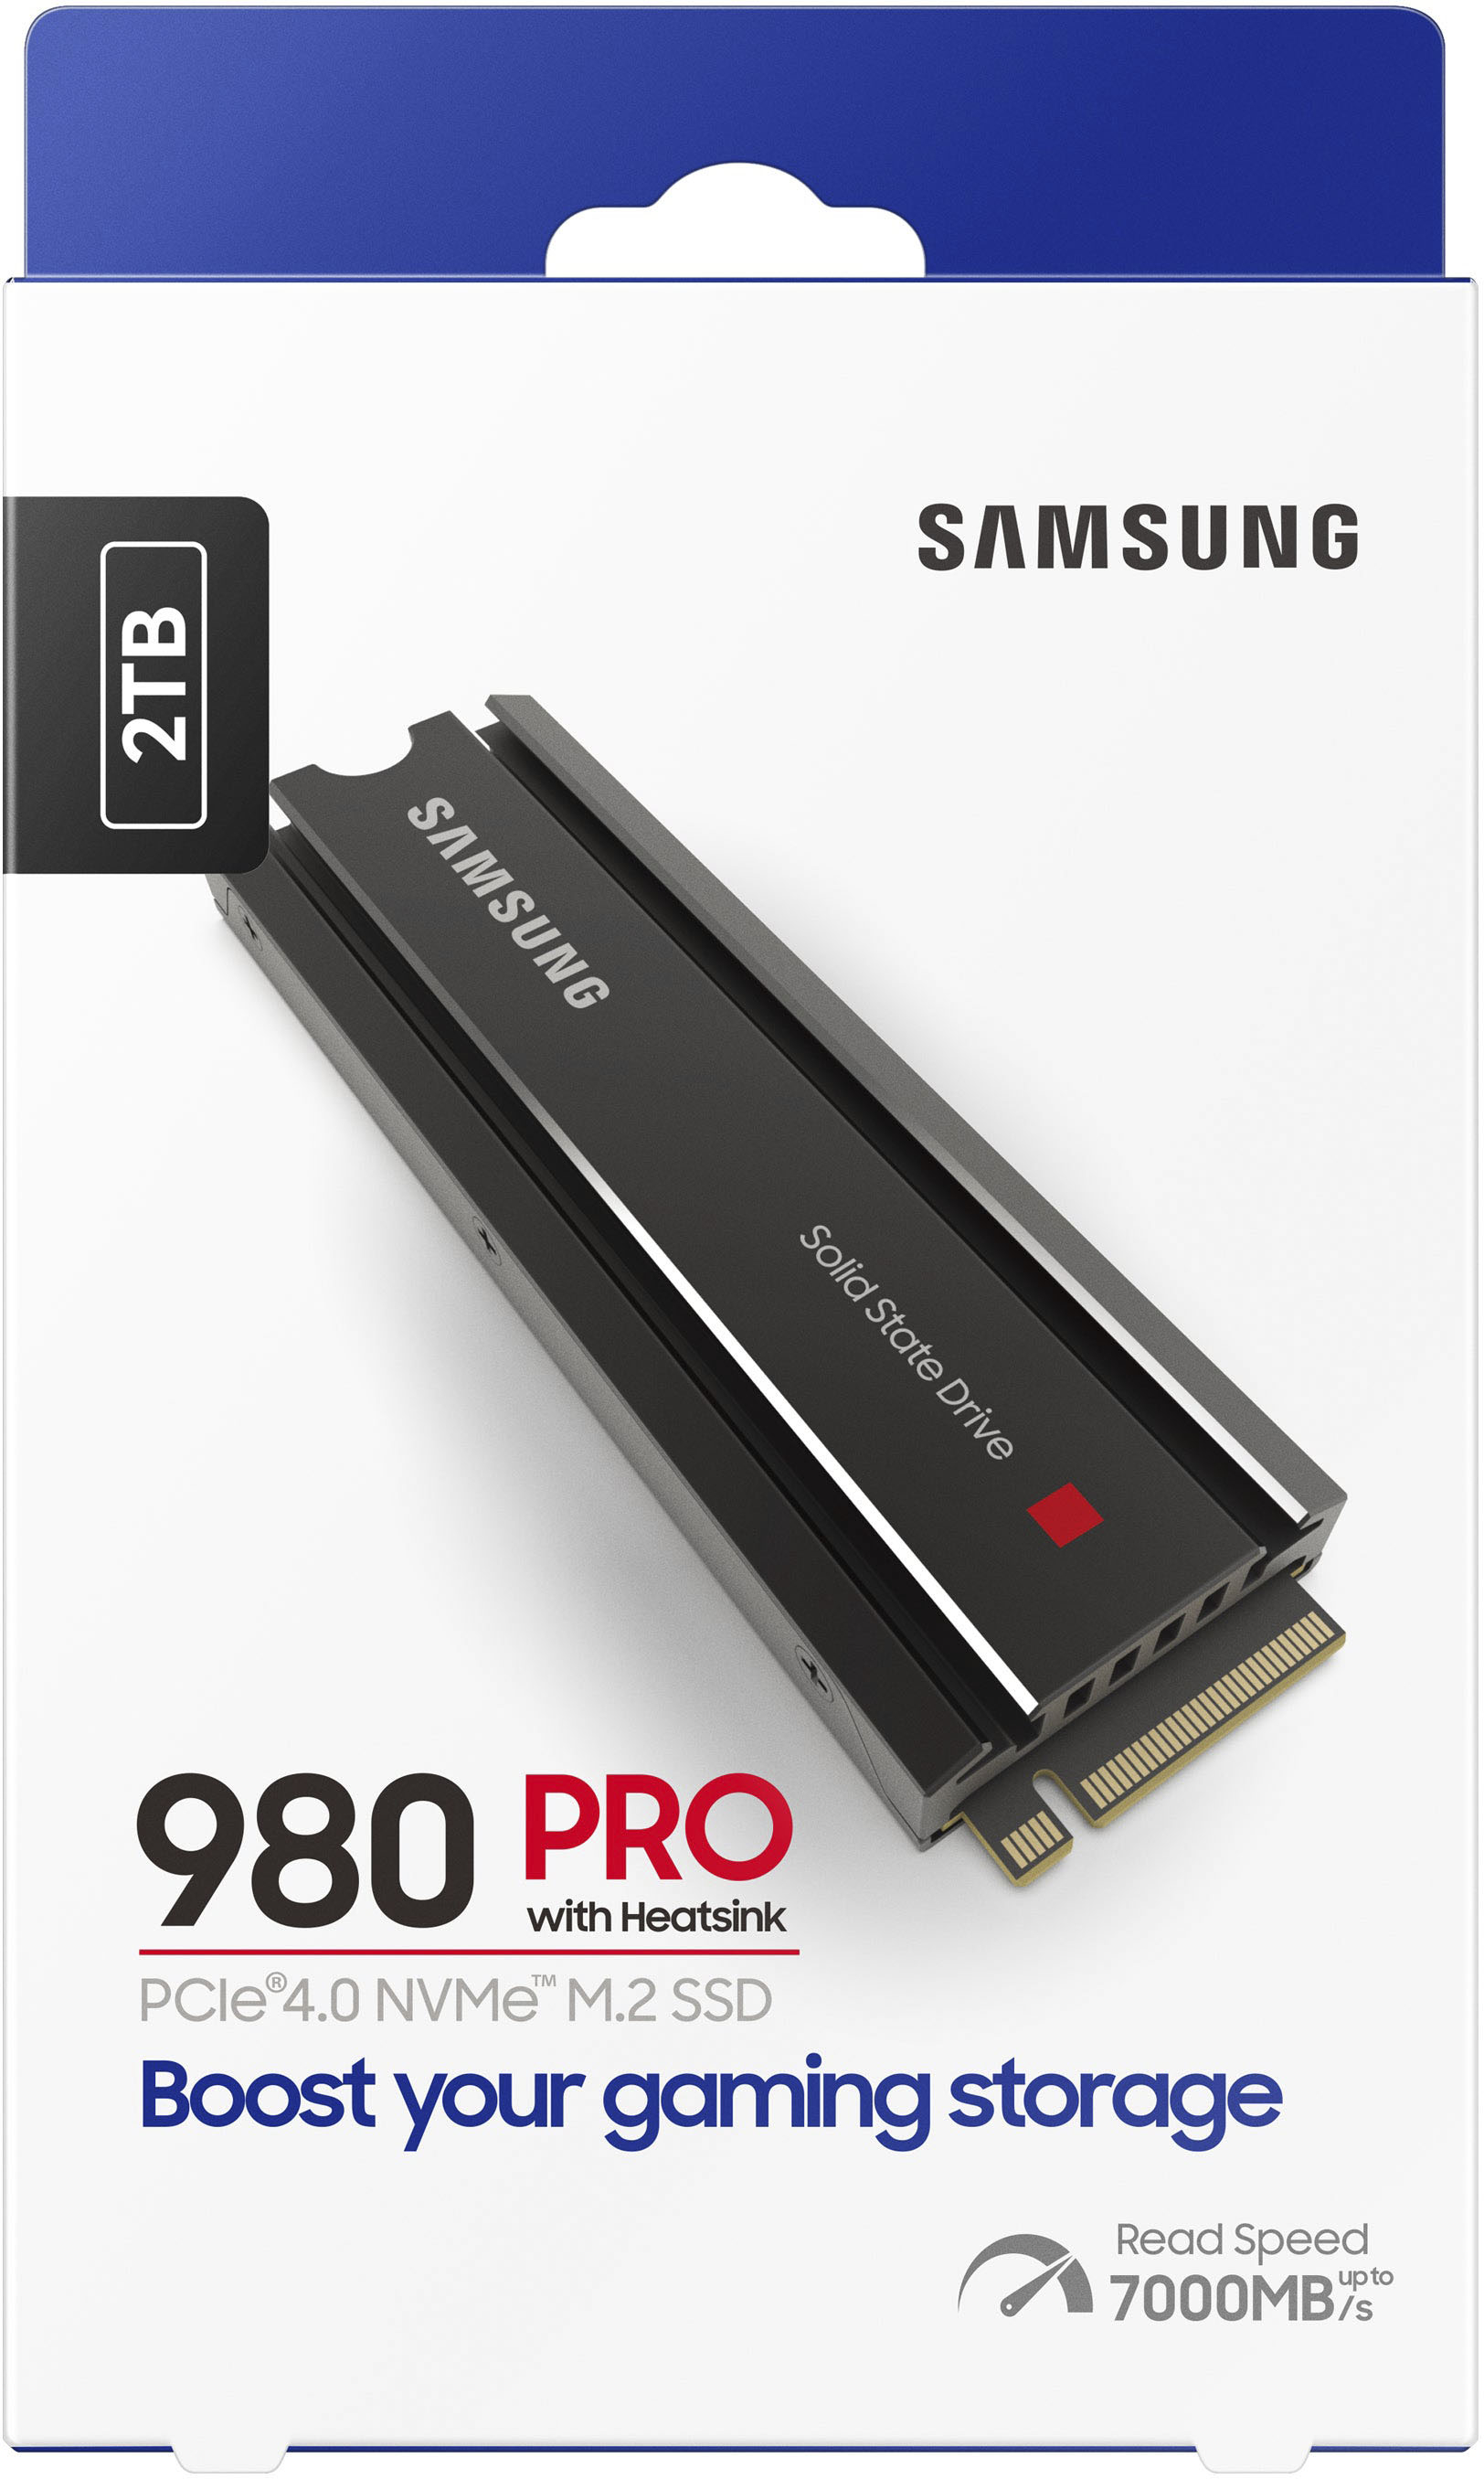 Samsung 980 PRO Heatsink 2TB Internal SSD PCIe Gen 4 x4 NVMe for 